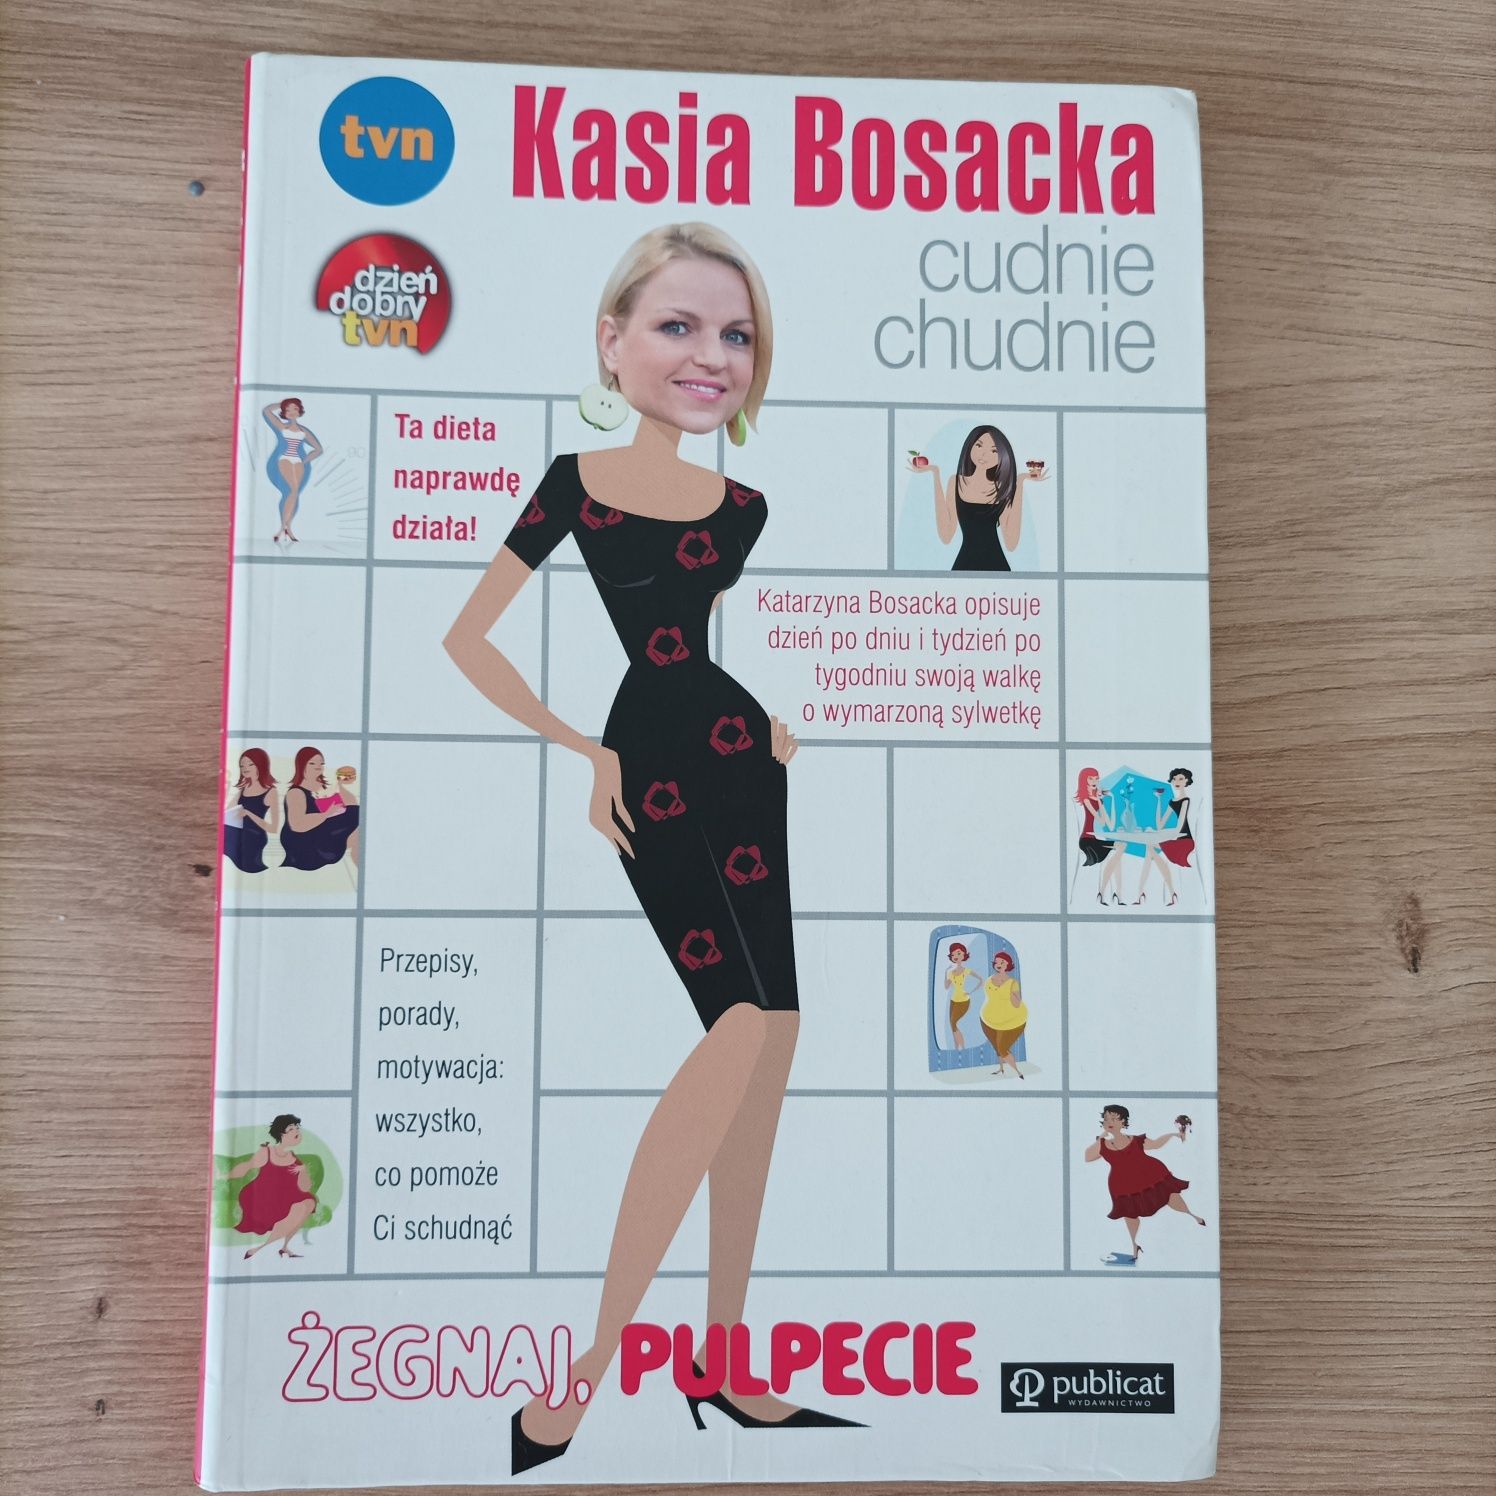 Kasia Bosacka - Cudnie chudnie